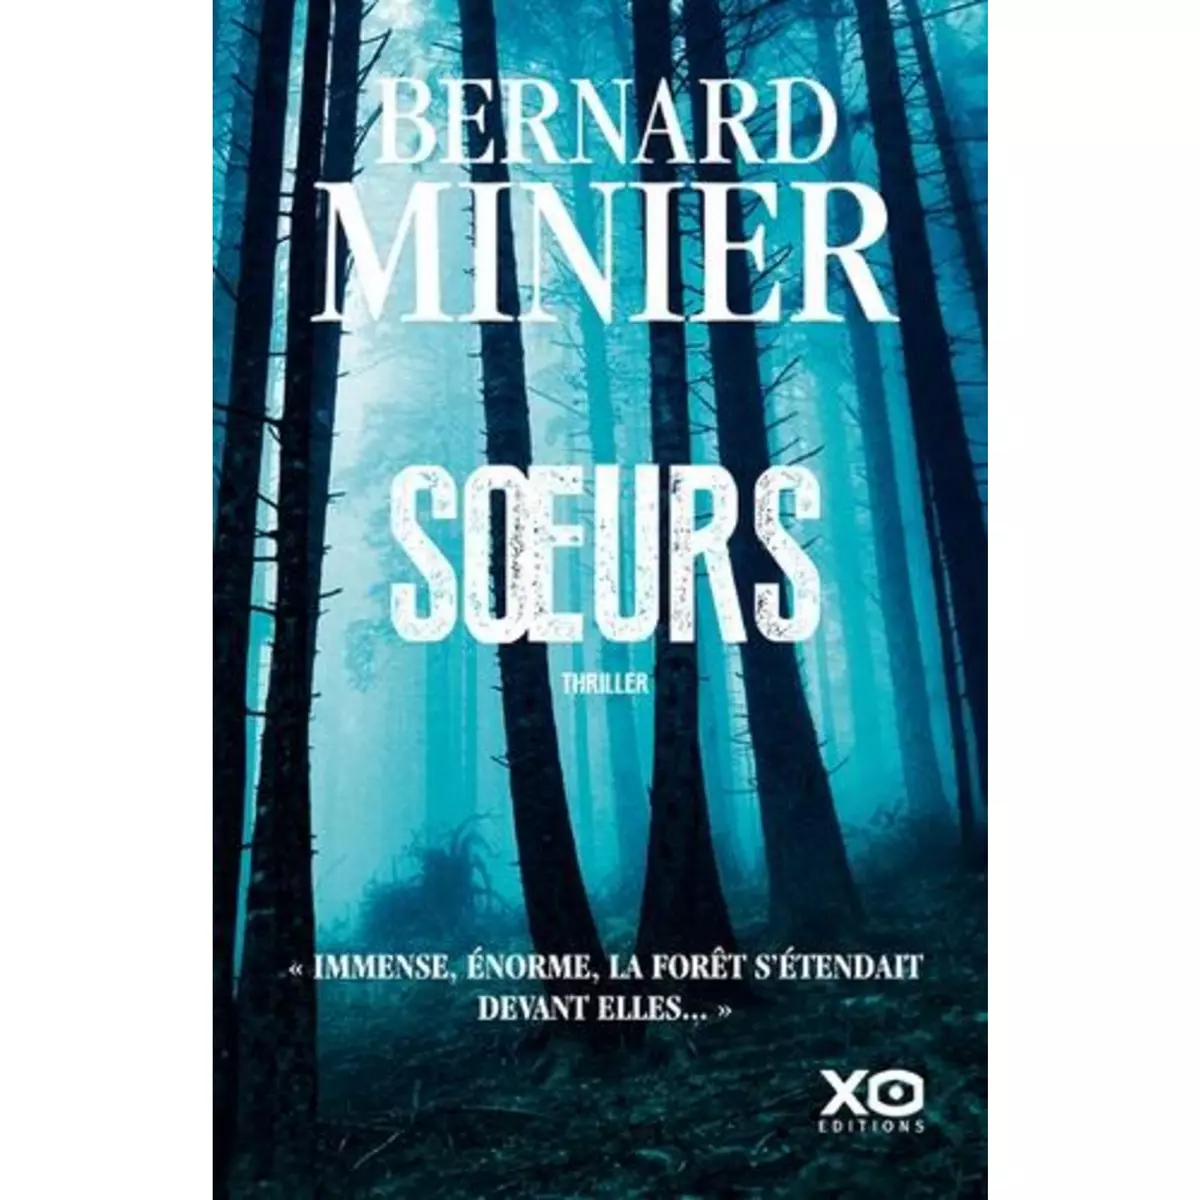  SOEURS, Minier Bernard